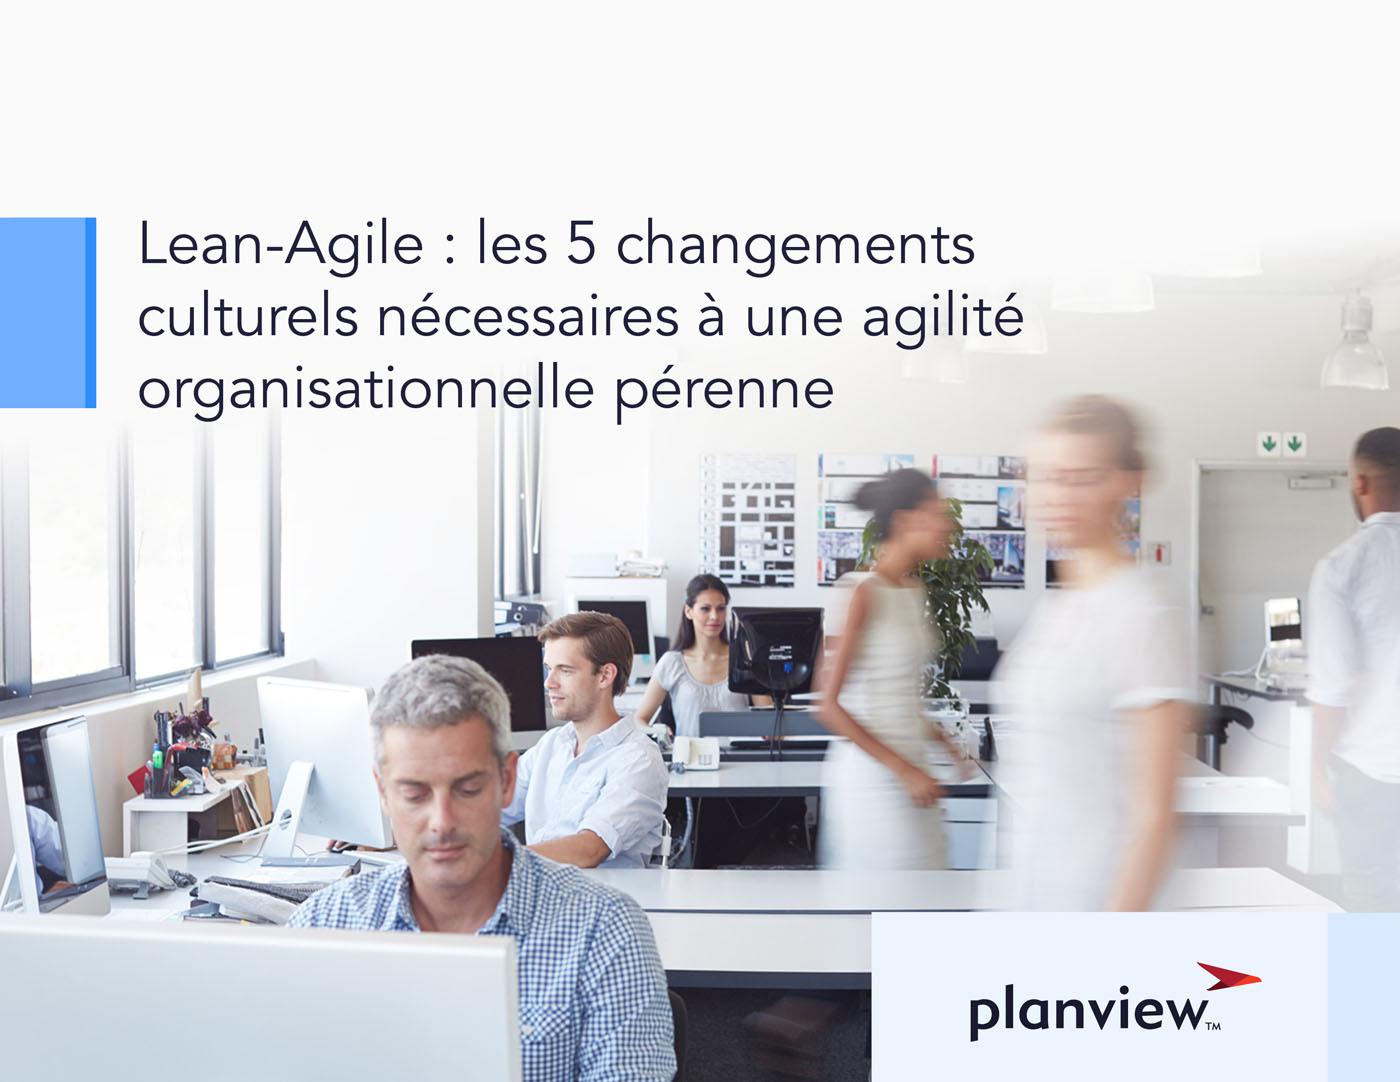 Lean-Agile : les 5 changements culturels nécessaires à une agilité organisationnelle pérenne